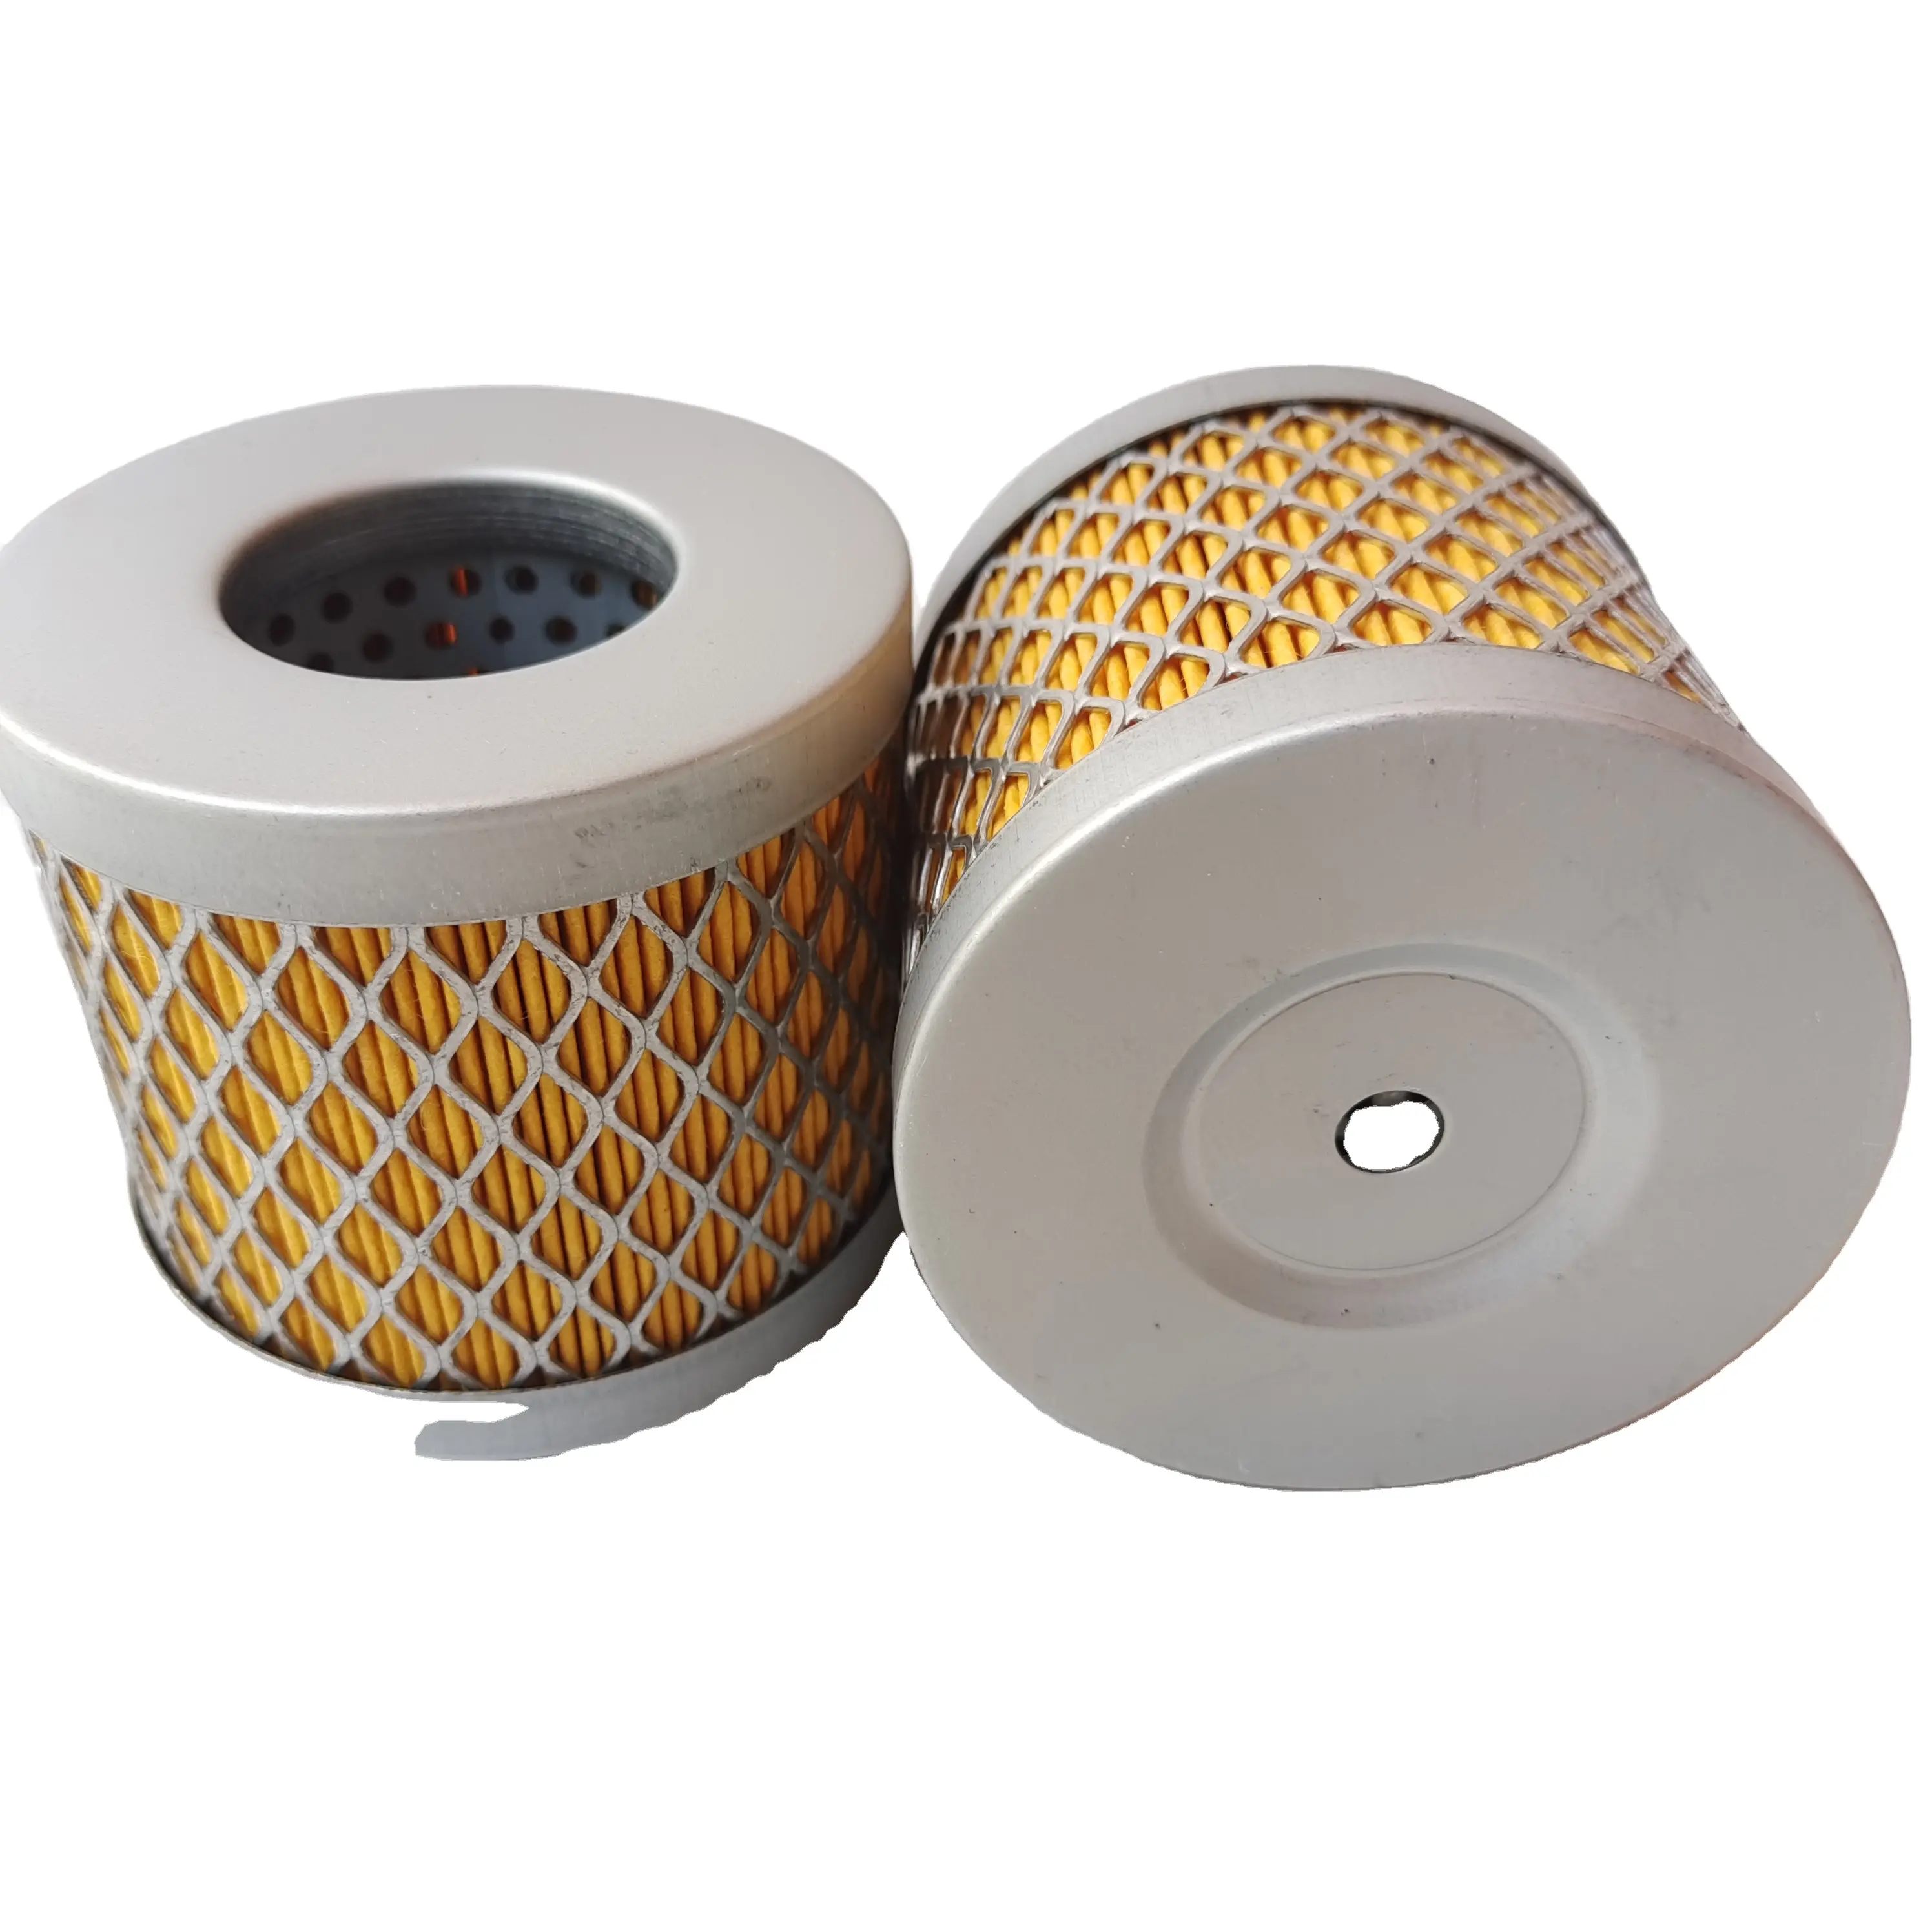 Toptan ucuz fiyat hava filtresi solunum filtresi B4347M düşük fiyat yüksek kalite